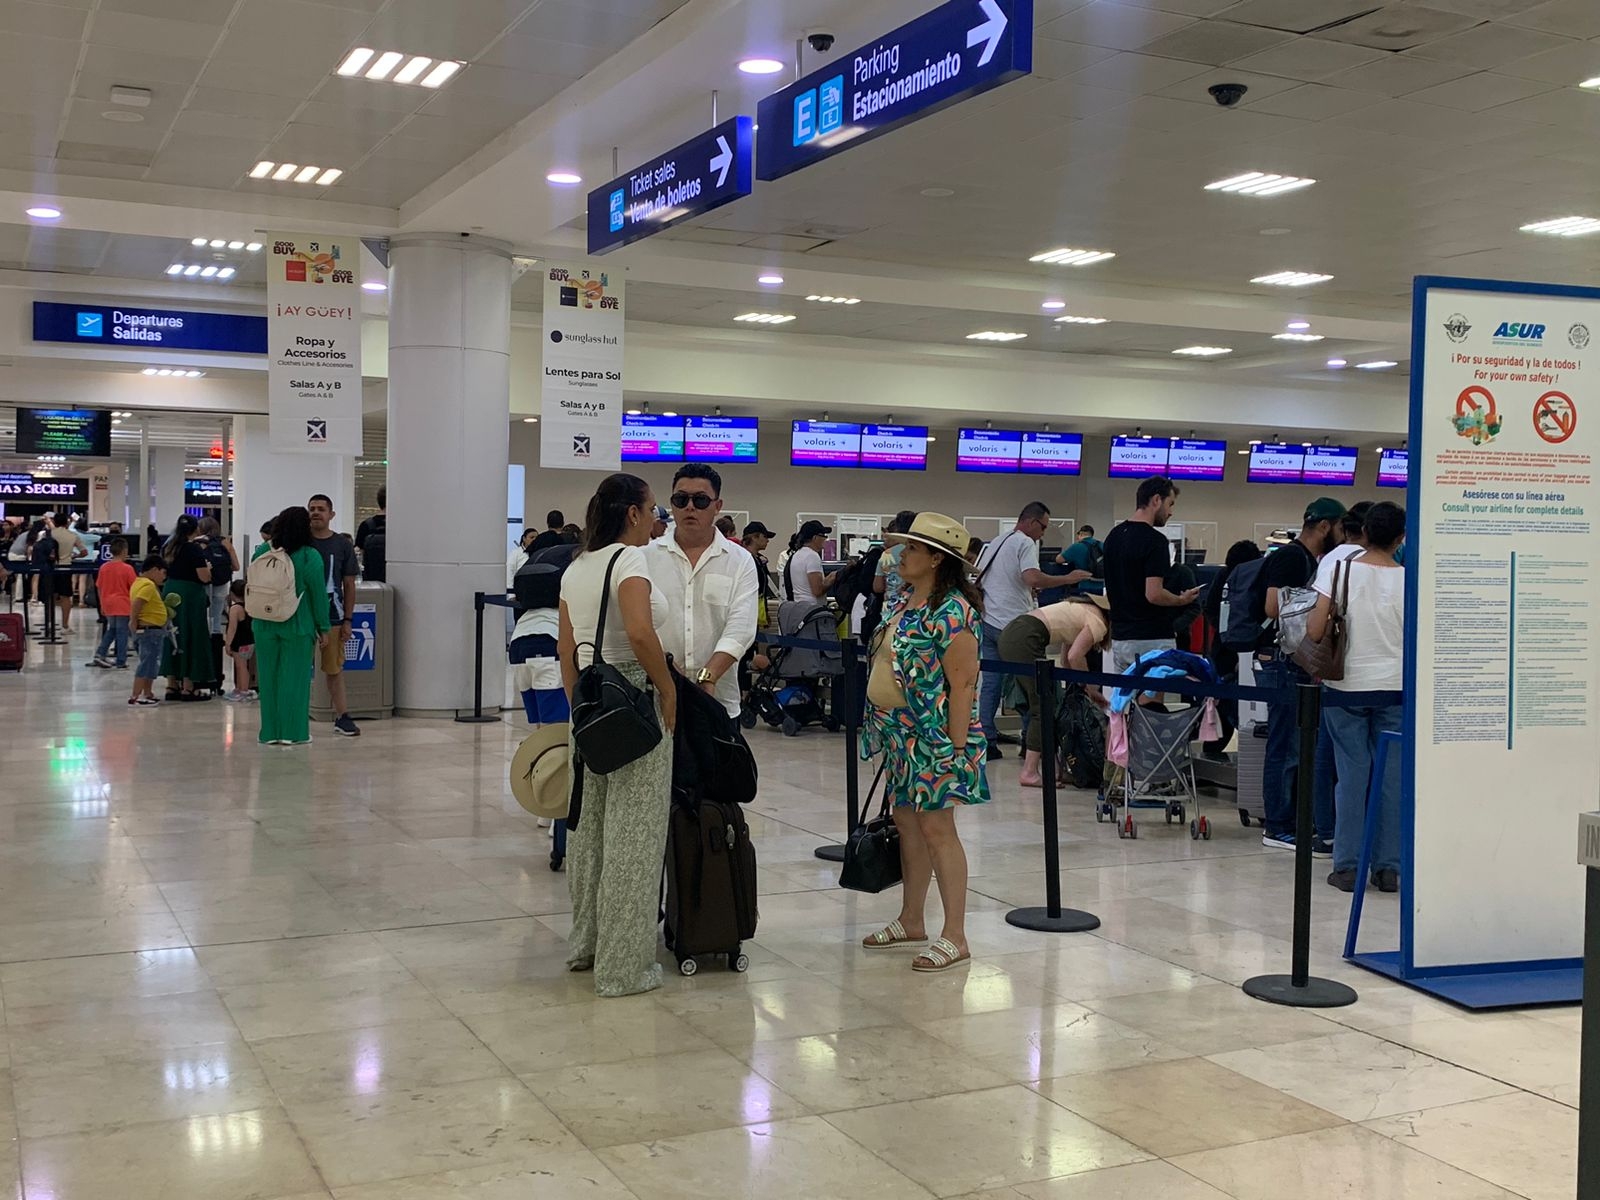 Retrasan una hora dos vuelos a Canadá y Perú en el aeropuerto de Cancún: EN VIVO